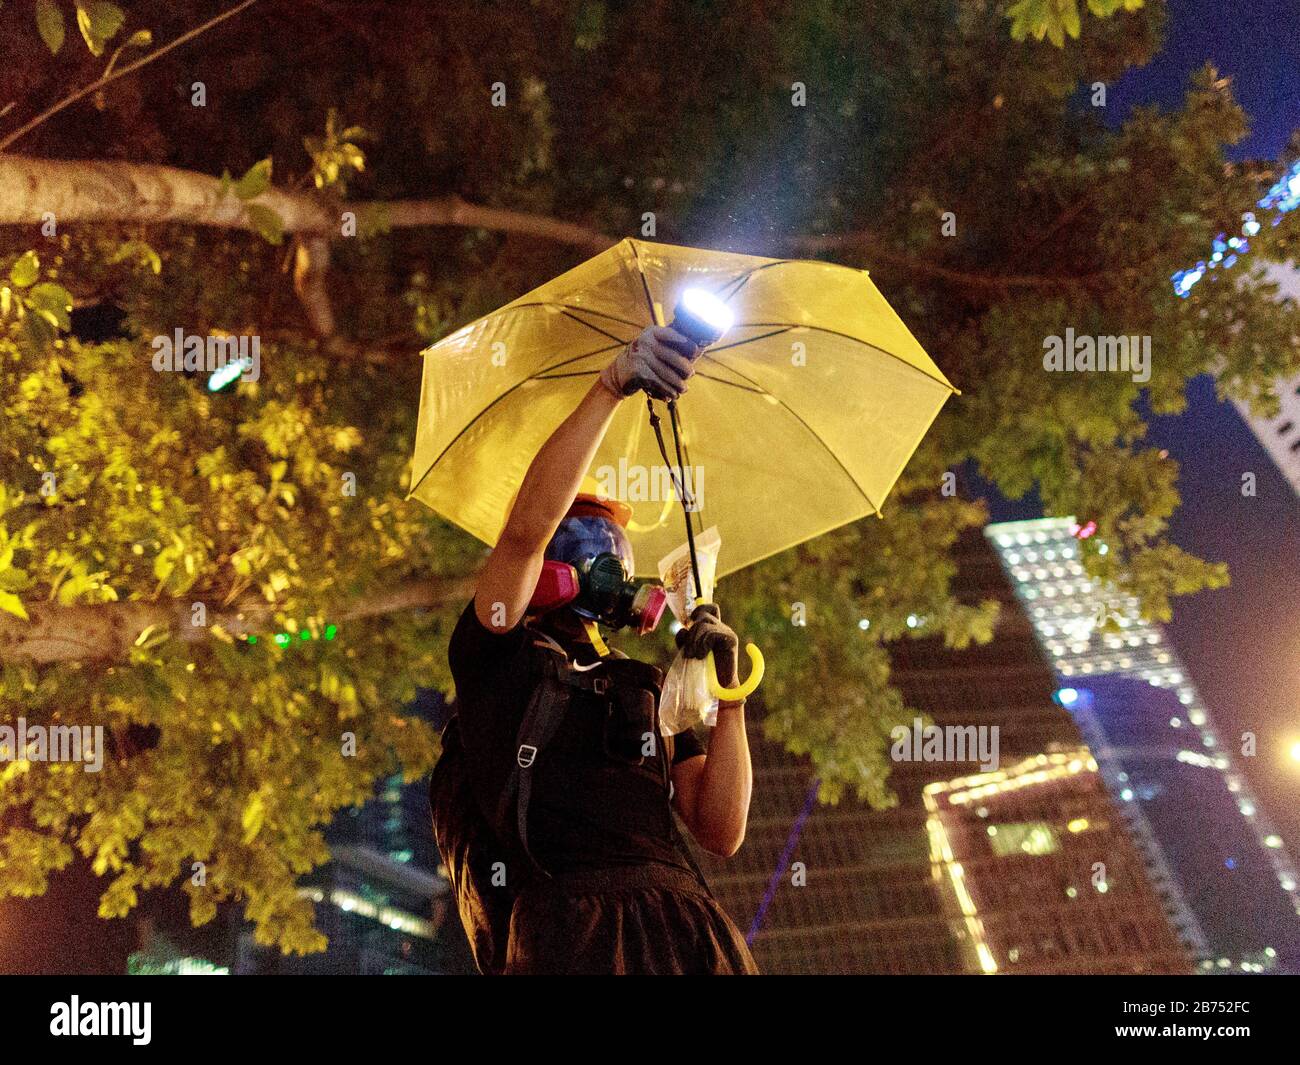 Les manifestants se confrontent avec la police à l'occasion du 5ème anniversaire du mouvement de parapluie de l'Amirauté. La police utilise un canon à eau pour les disperser. Banque D'Images